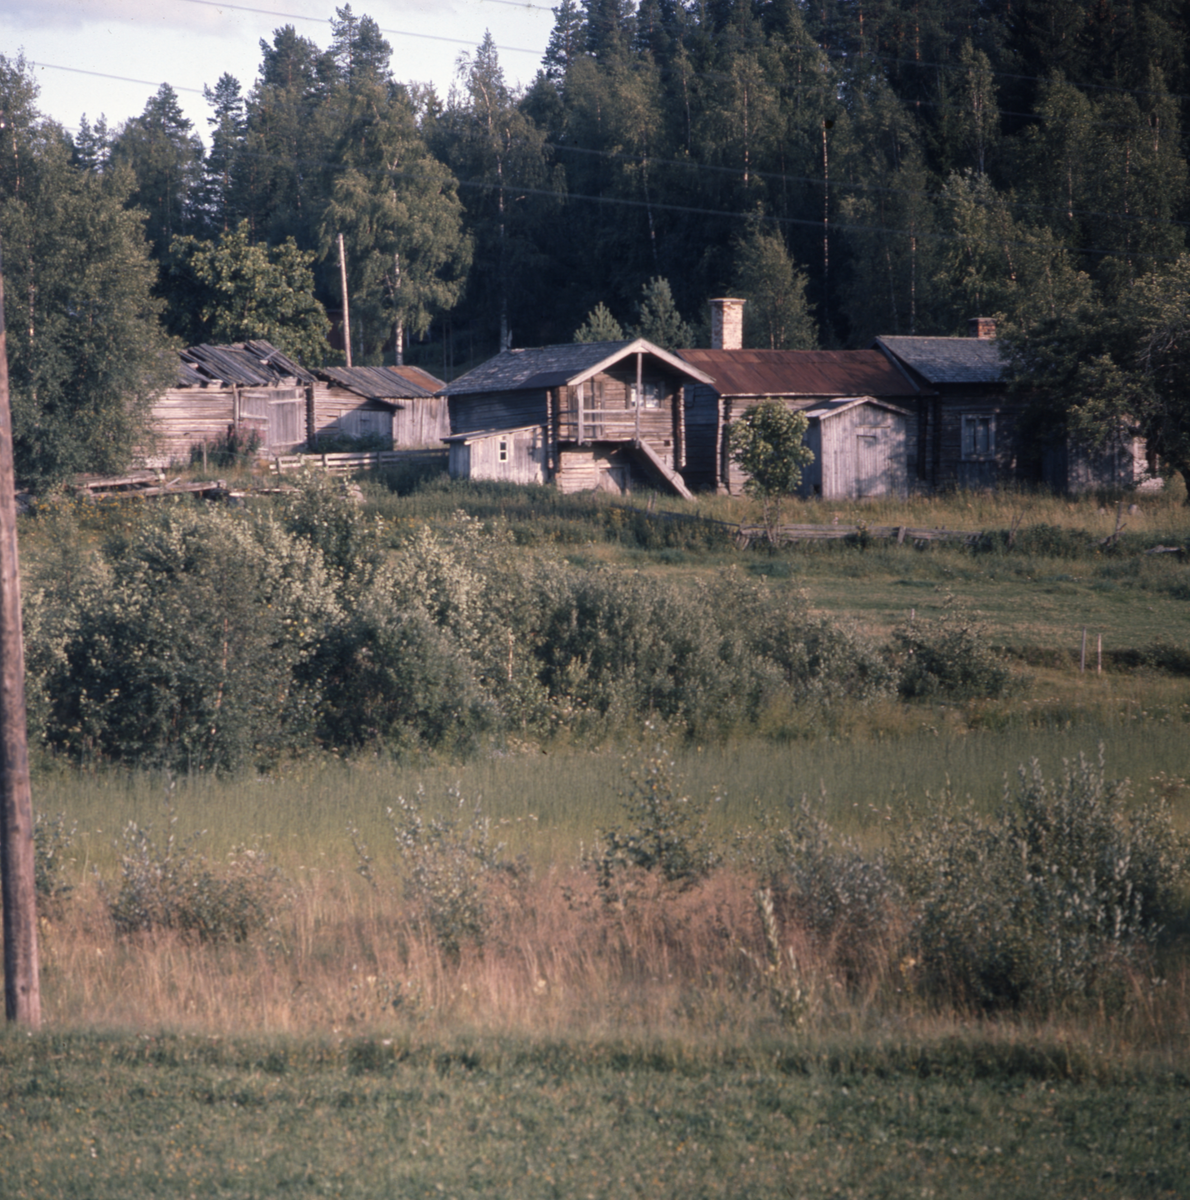 En gård med timrade hus samt några förfallna skjul.